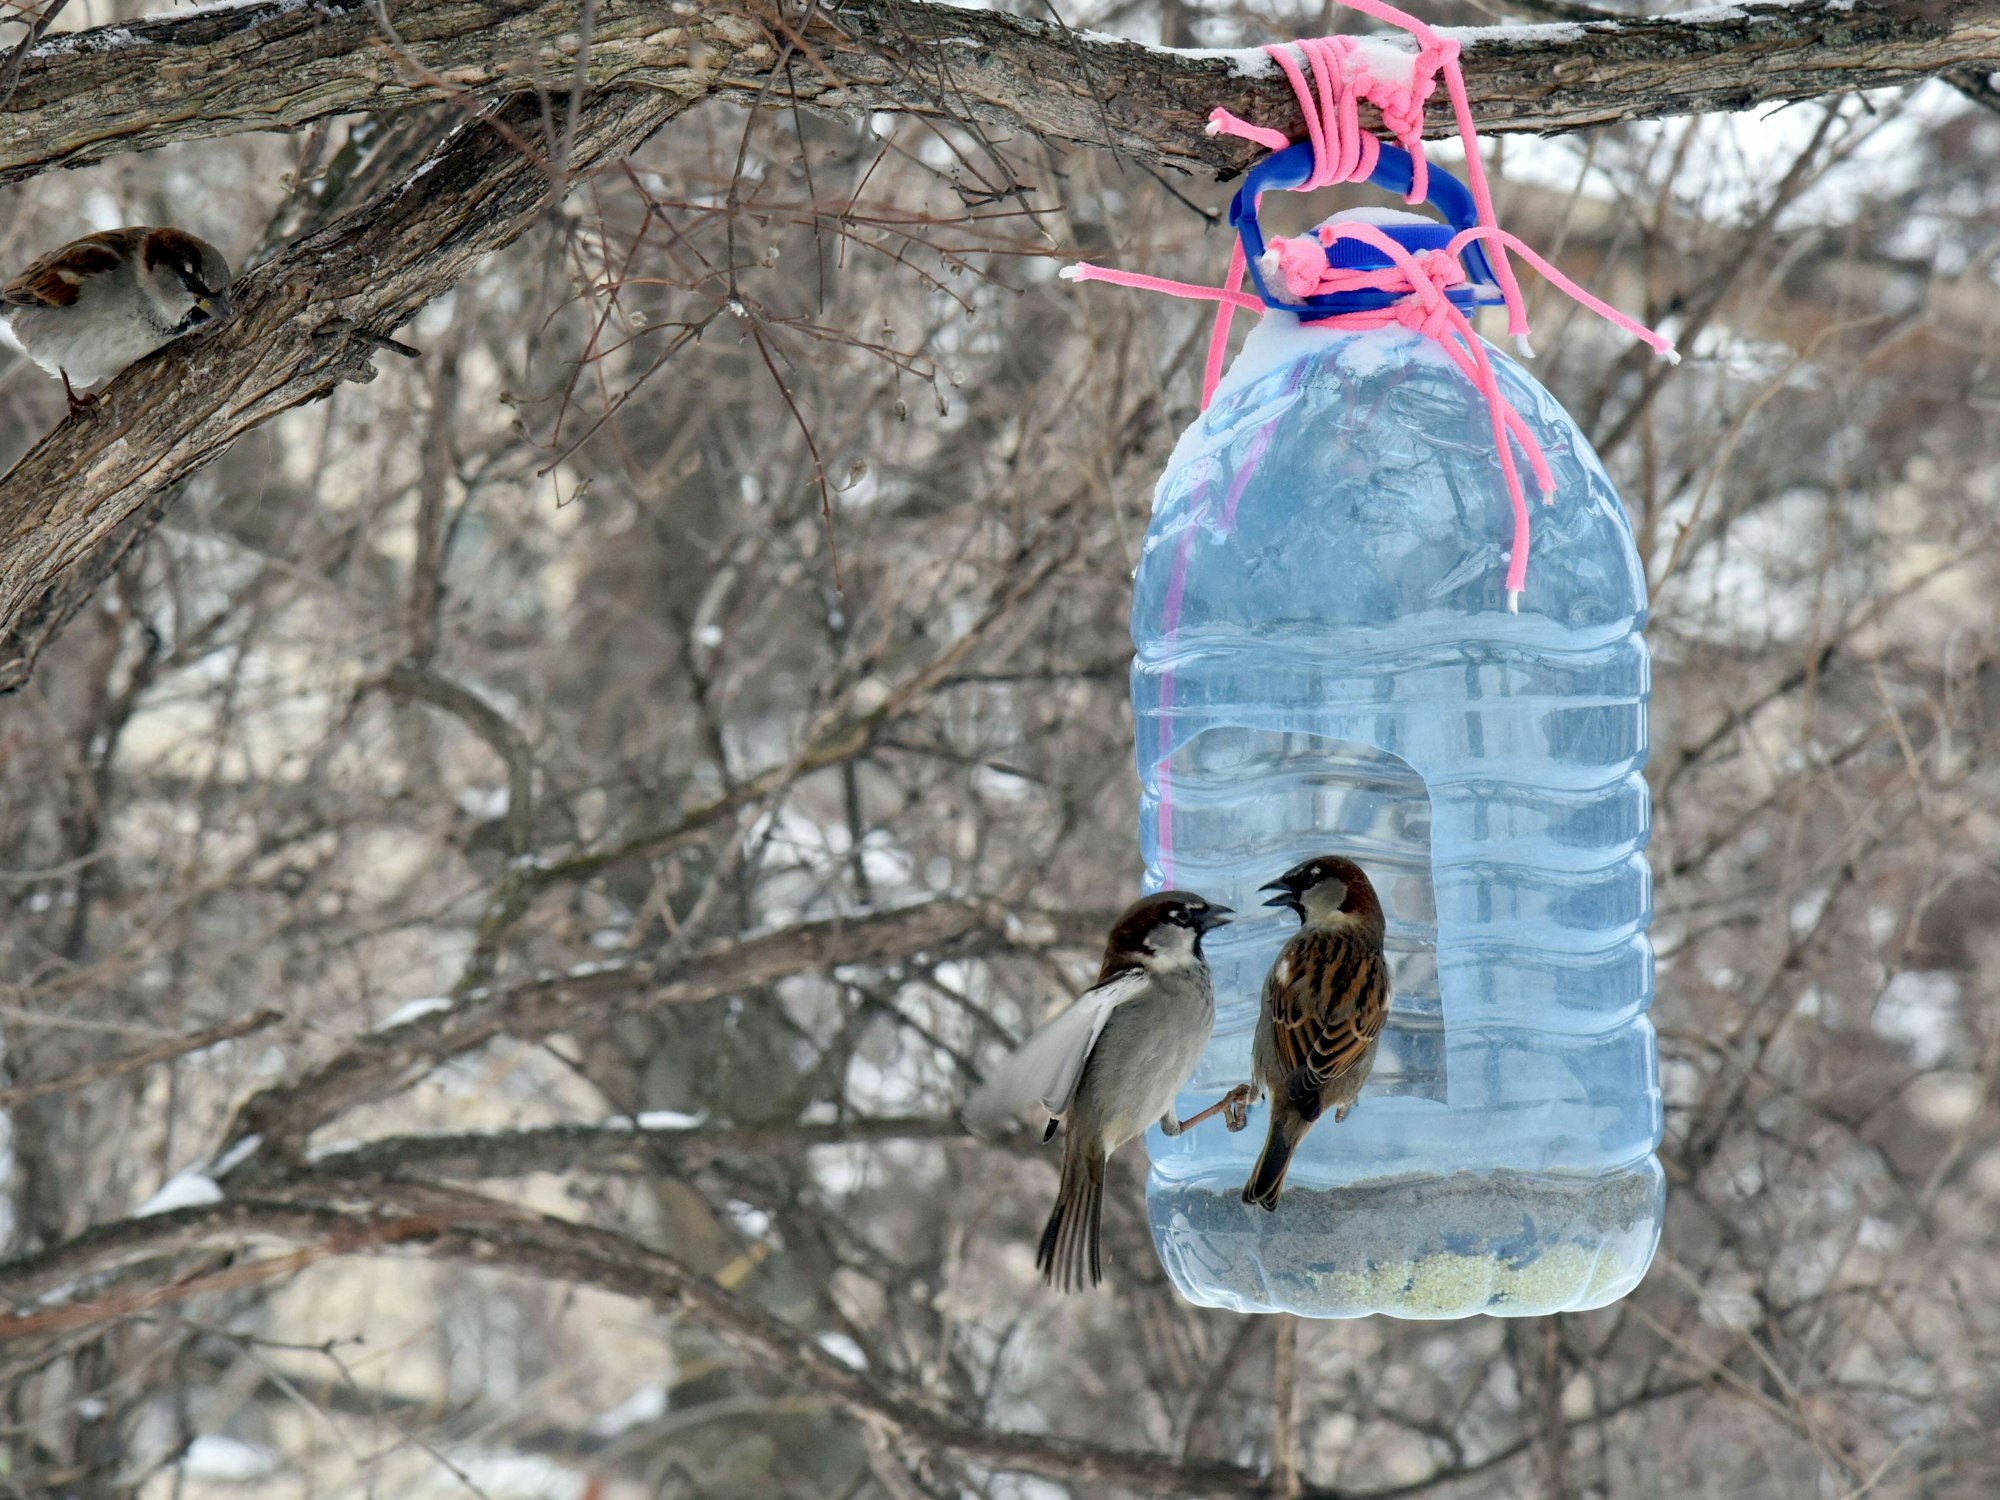 Vögel bedienen sich an einem selbstgebauten Futterspender aus einer Plastikflasche, der an einem Baum angebracht ist.